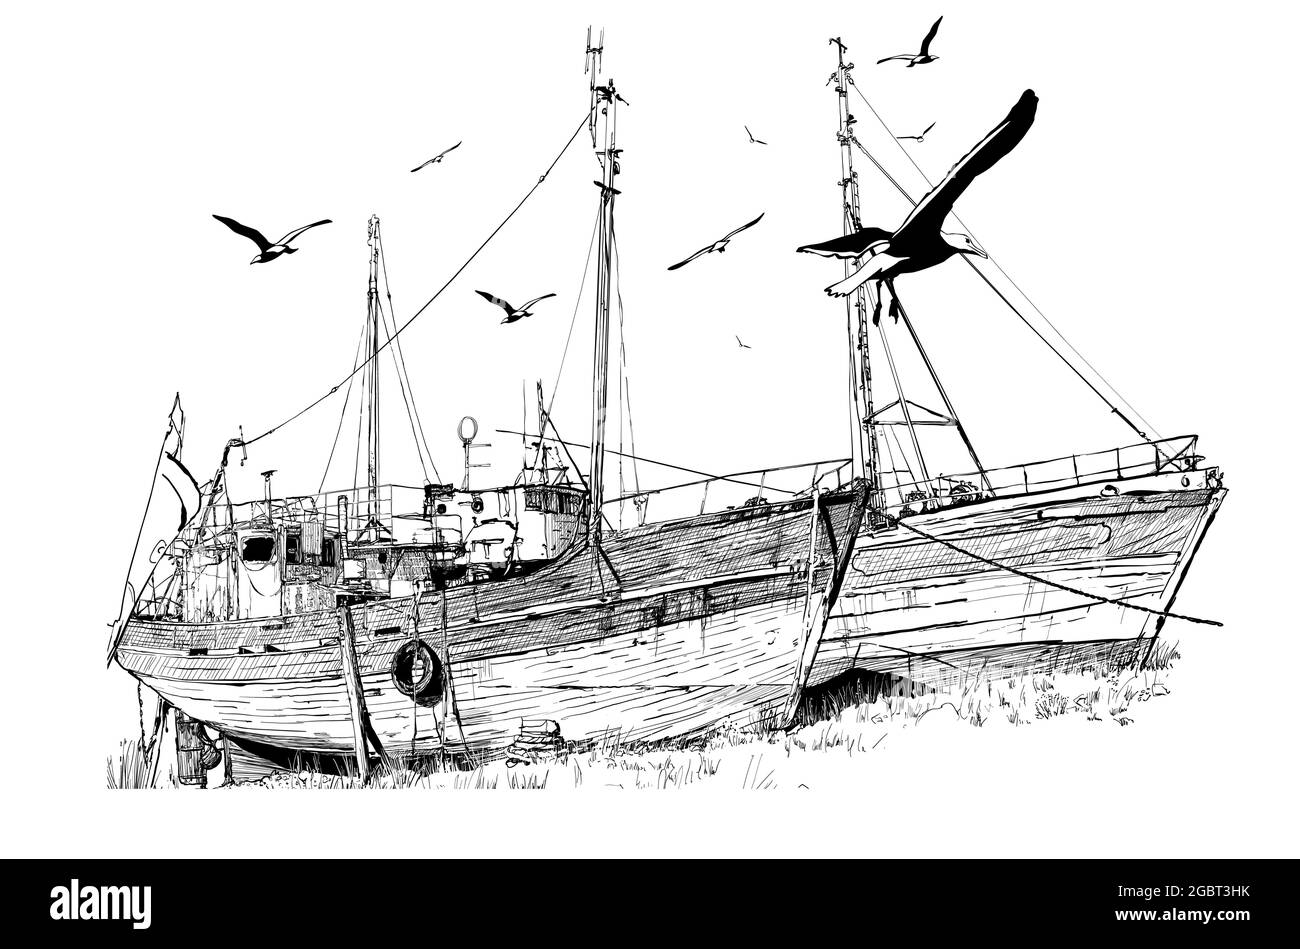 Disegno di due vecchie barche da pesca abbandonate in bassa marea, Bretagna, Francia. - illustrazione vettoriale Illustrazione Vettoriale